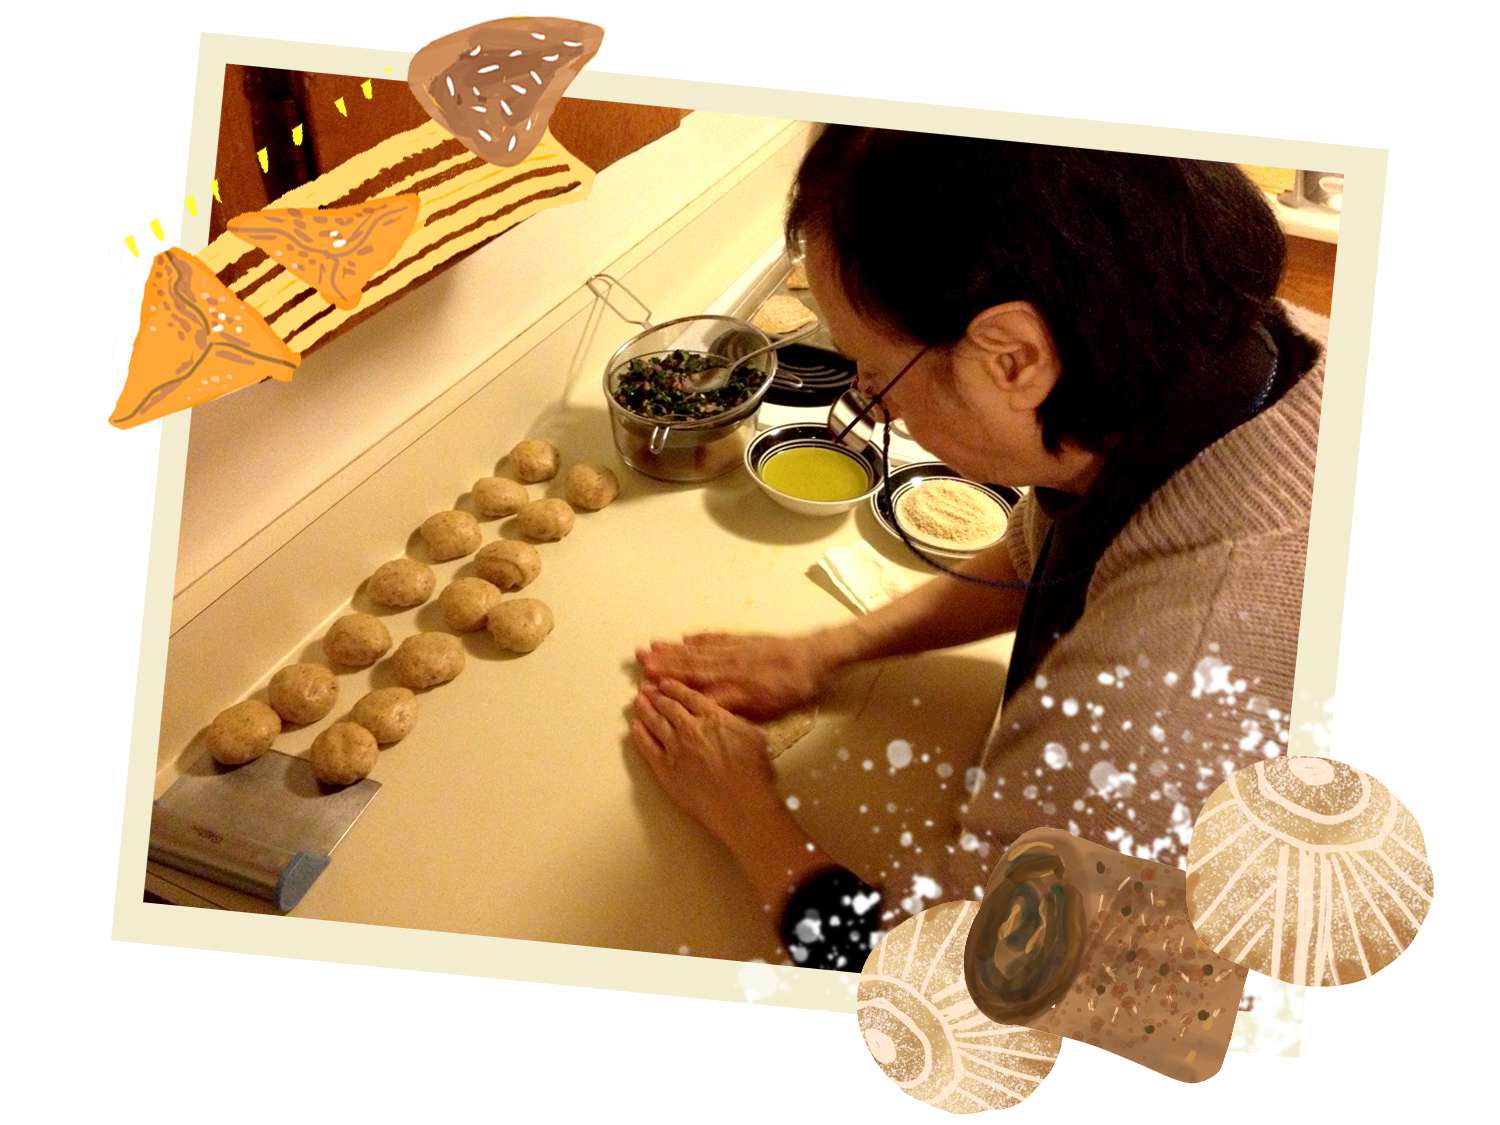 作者母亲在柜台上做饼干的照片，上面覆盖着饼干的插图